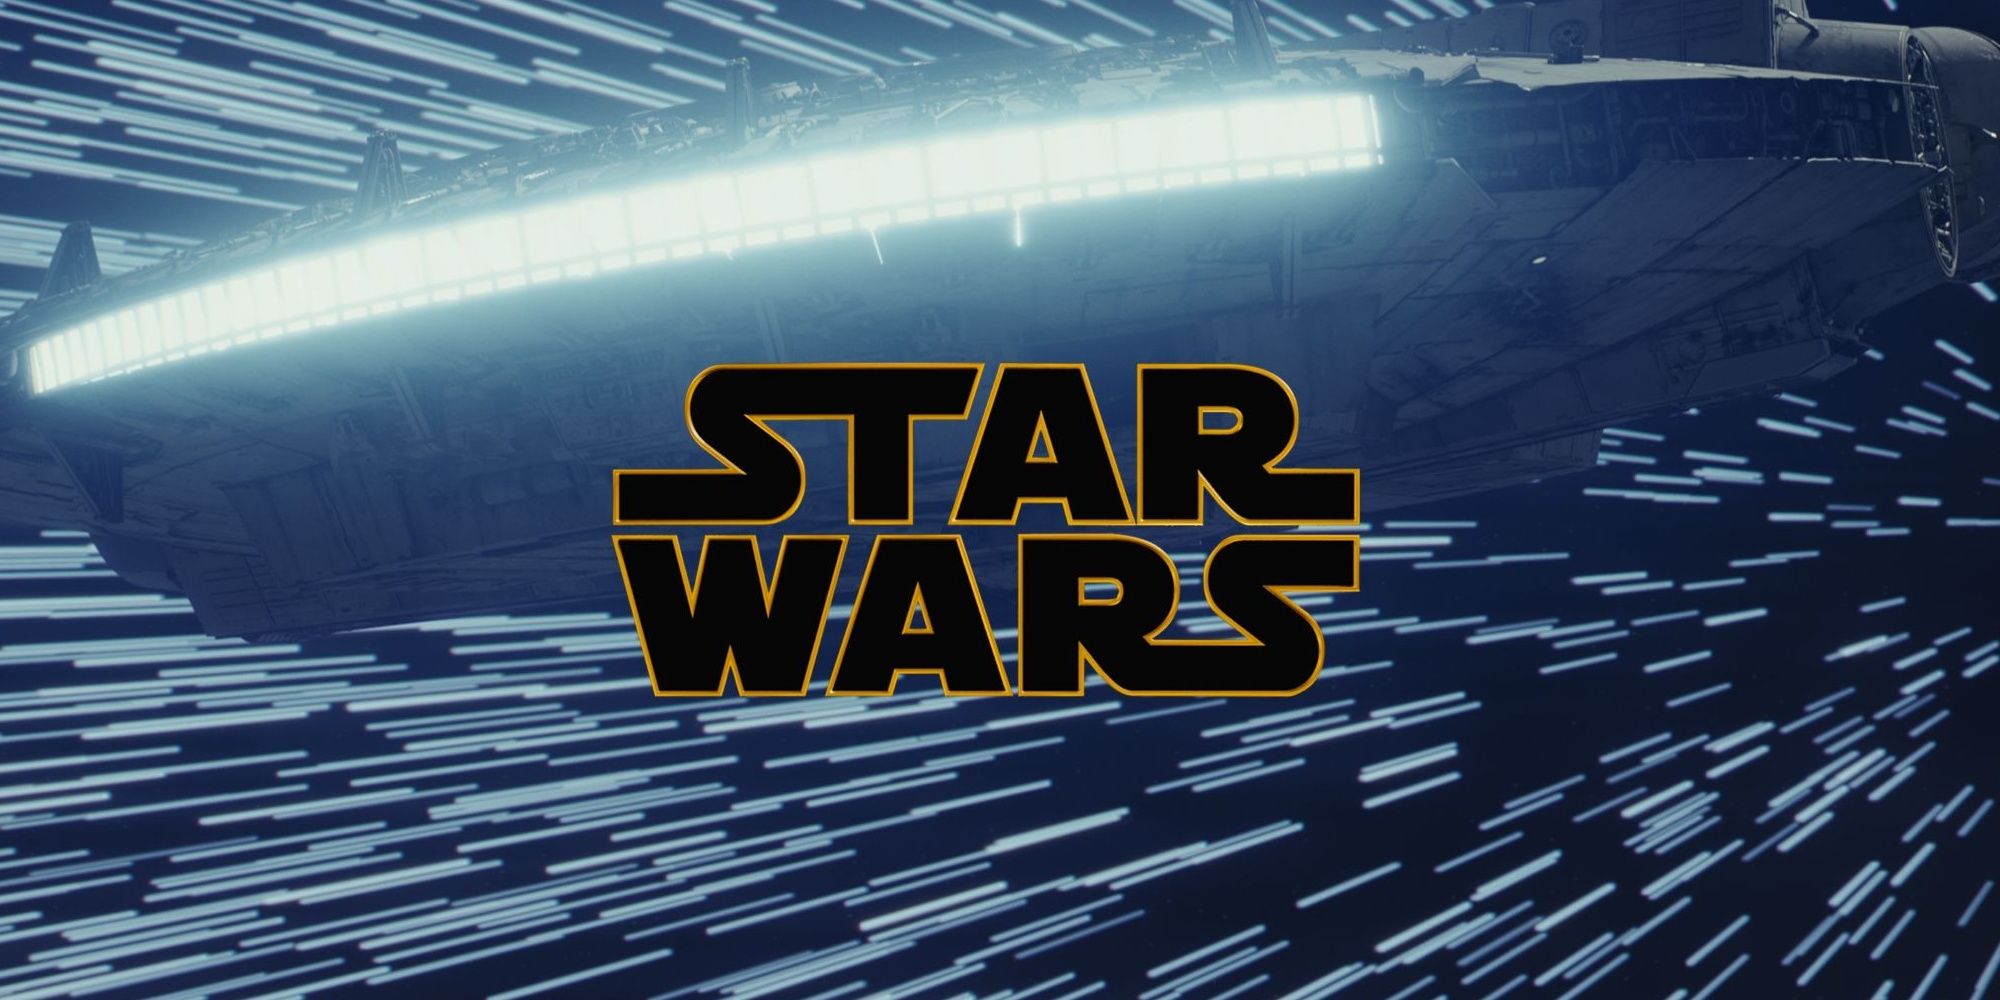 Gambar Millenium Falcon di hyperspace ada di belakang logo Star Wars, dengan garis kuning